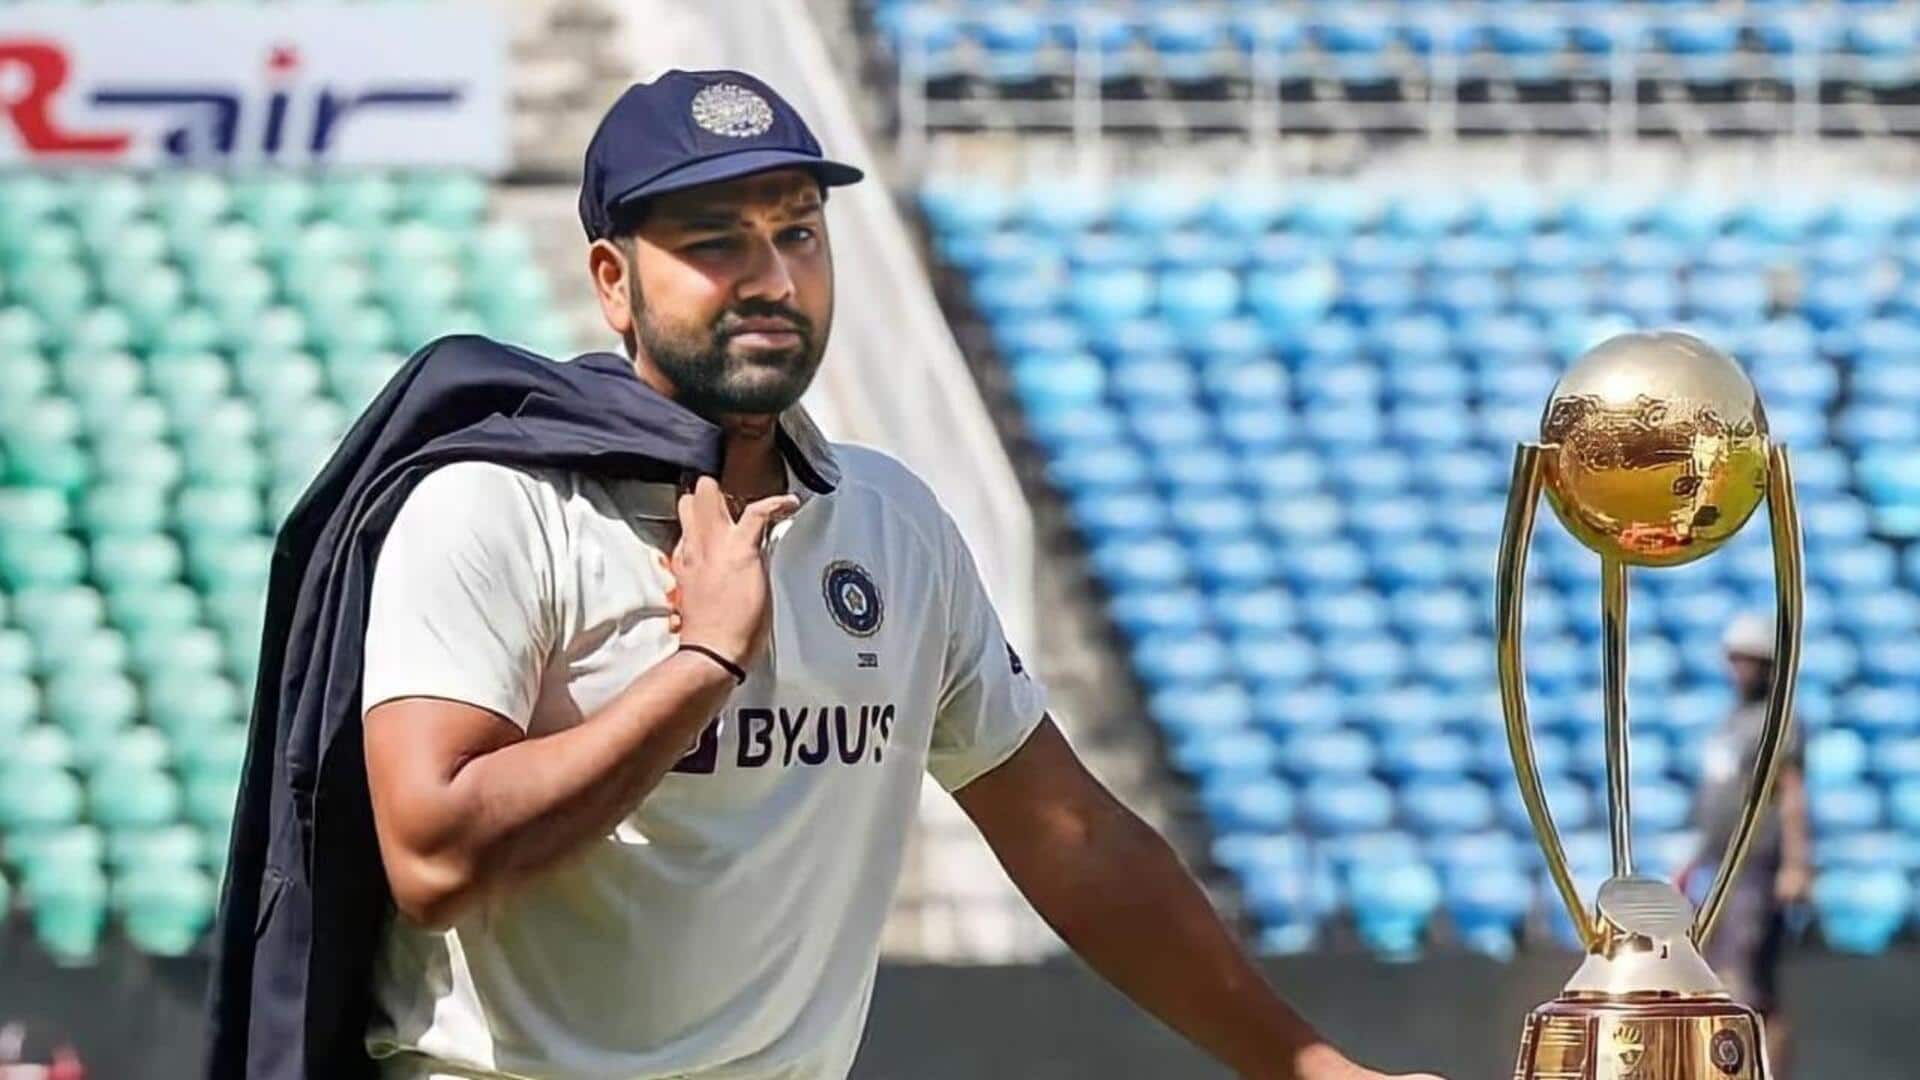 भारतीय क्रिकेट टीम टेस्ट में विश्व की पहले नंबर की टीम बनी, ऑस्ट्रेलिया को पीछे छोड़ा 